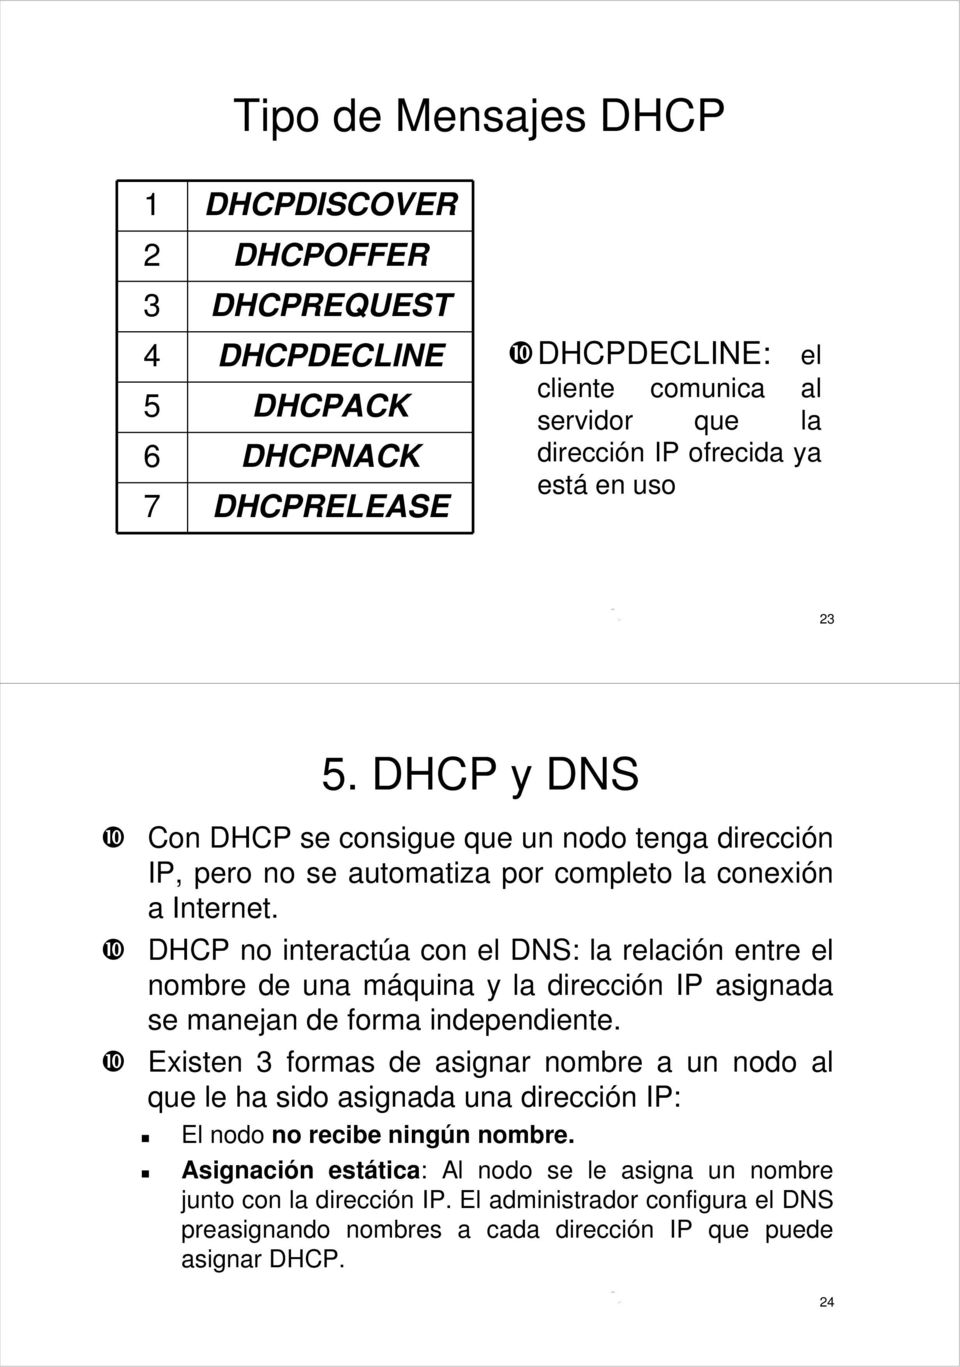 ❿ DHCP no interactúa con el DNS: la relación entre el nombre de una máquina y la dirección IP asignada se manejan de forma independiente.